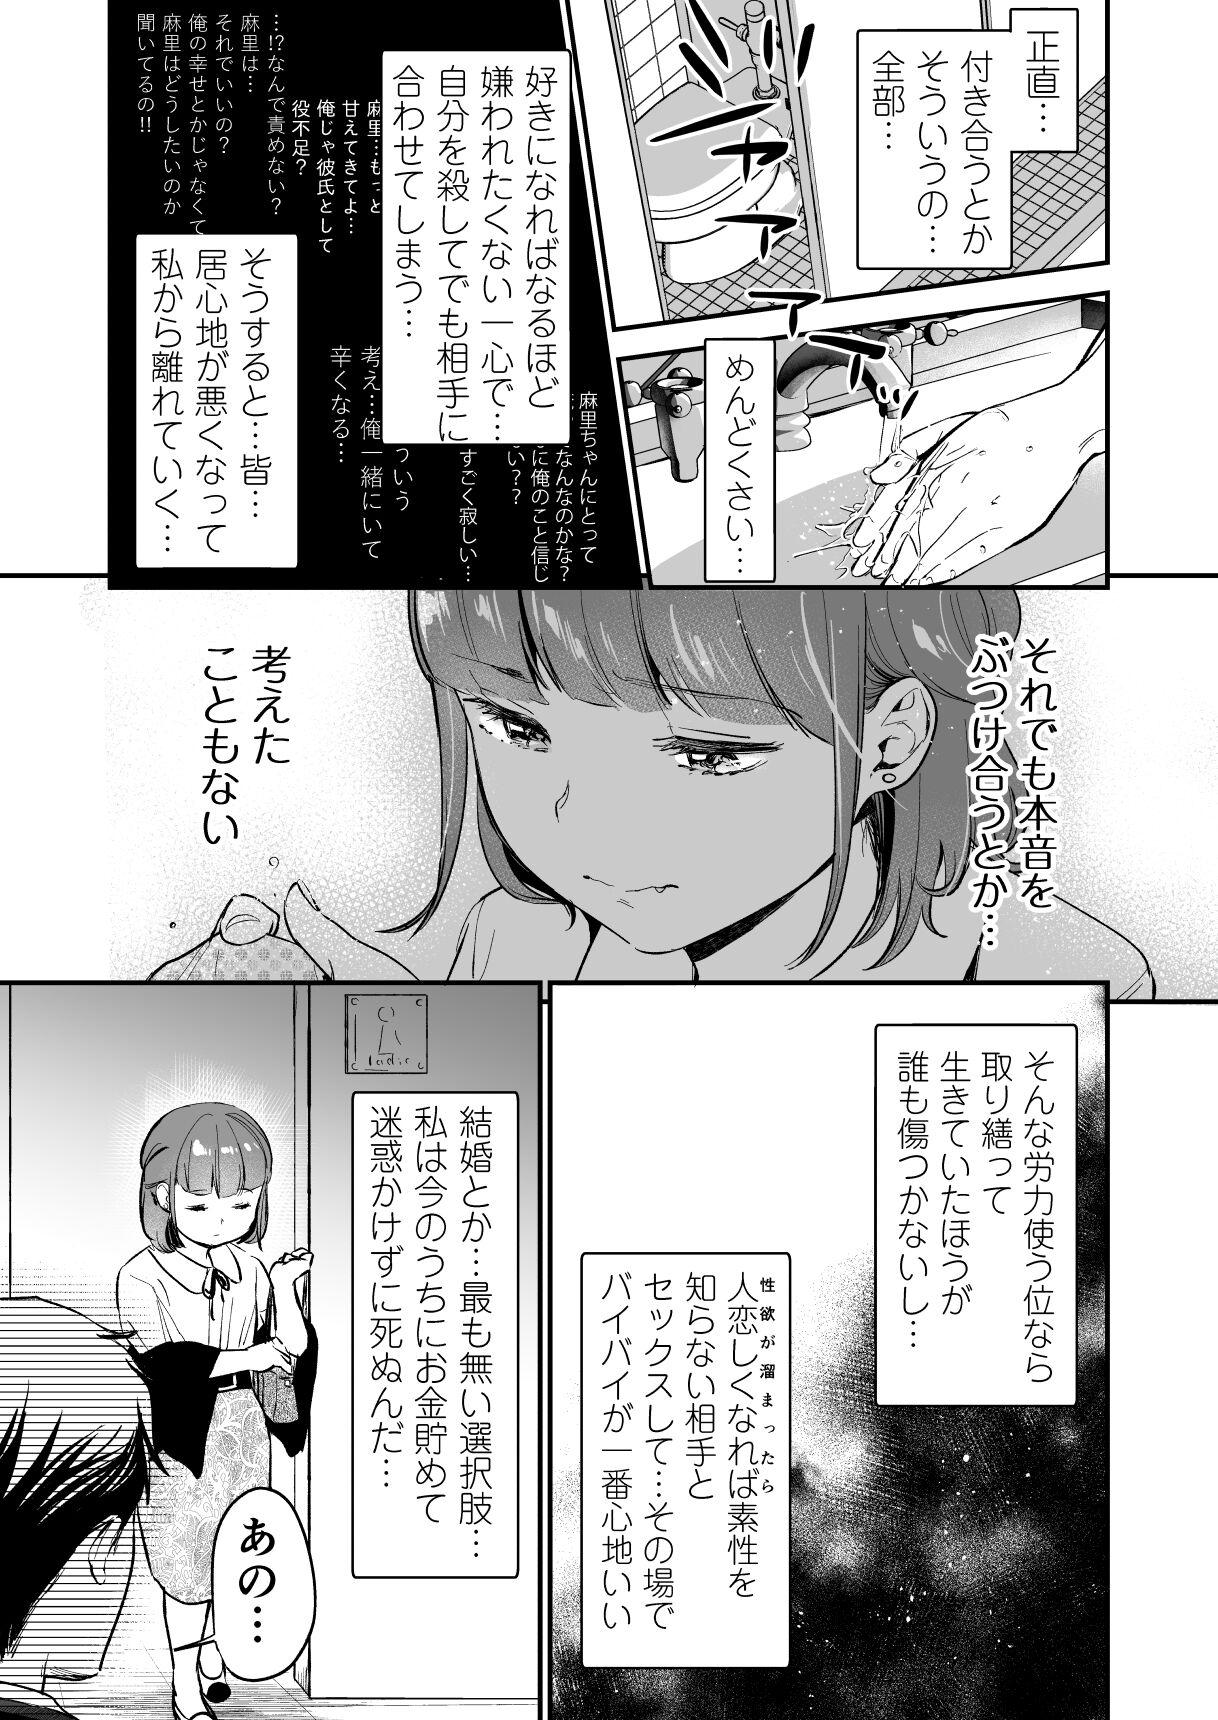 Ride Chīsana nikushoku-jū wa ōkina chi ● po de haramita gatte iru - Original T Girl - Page 5